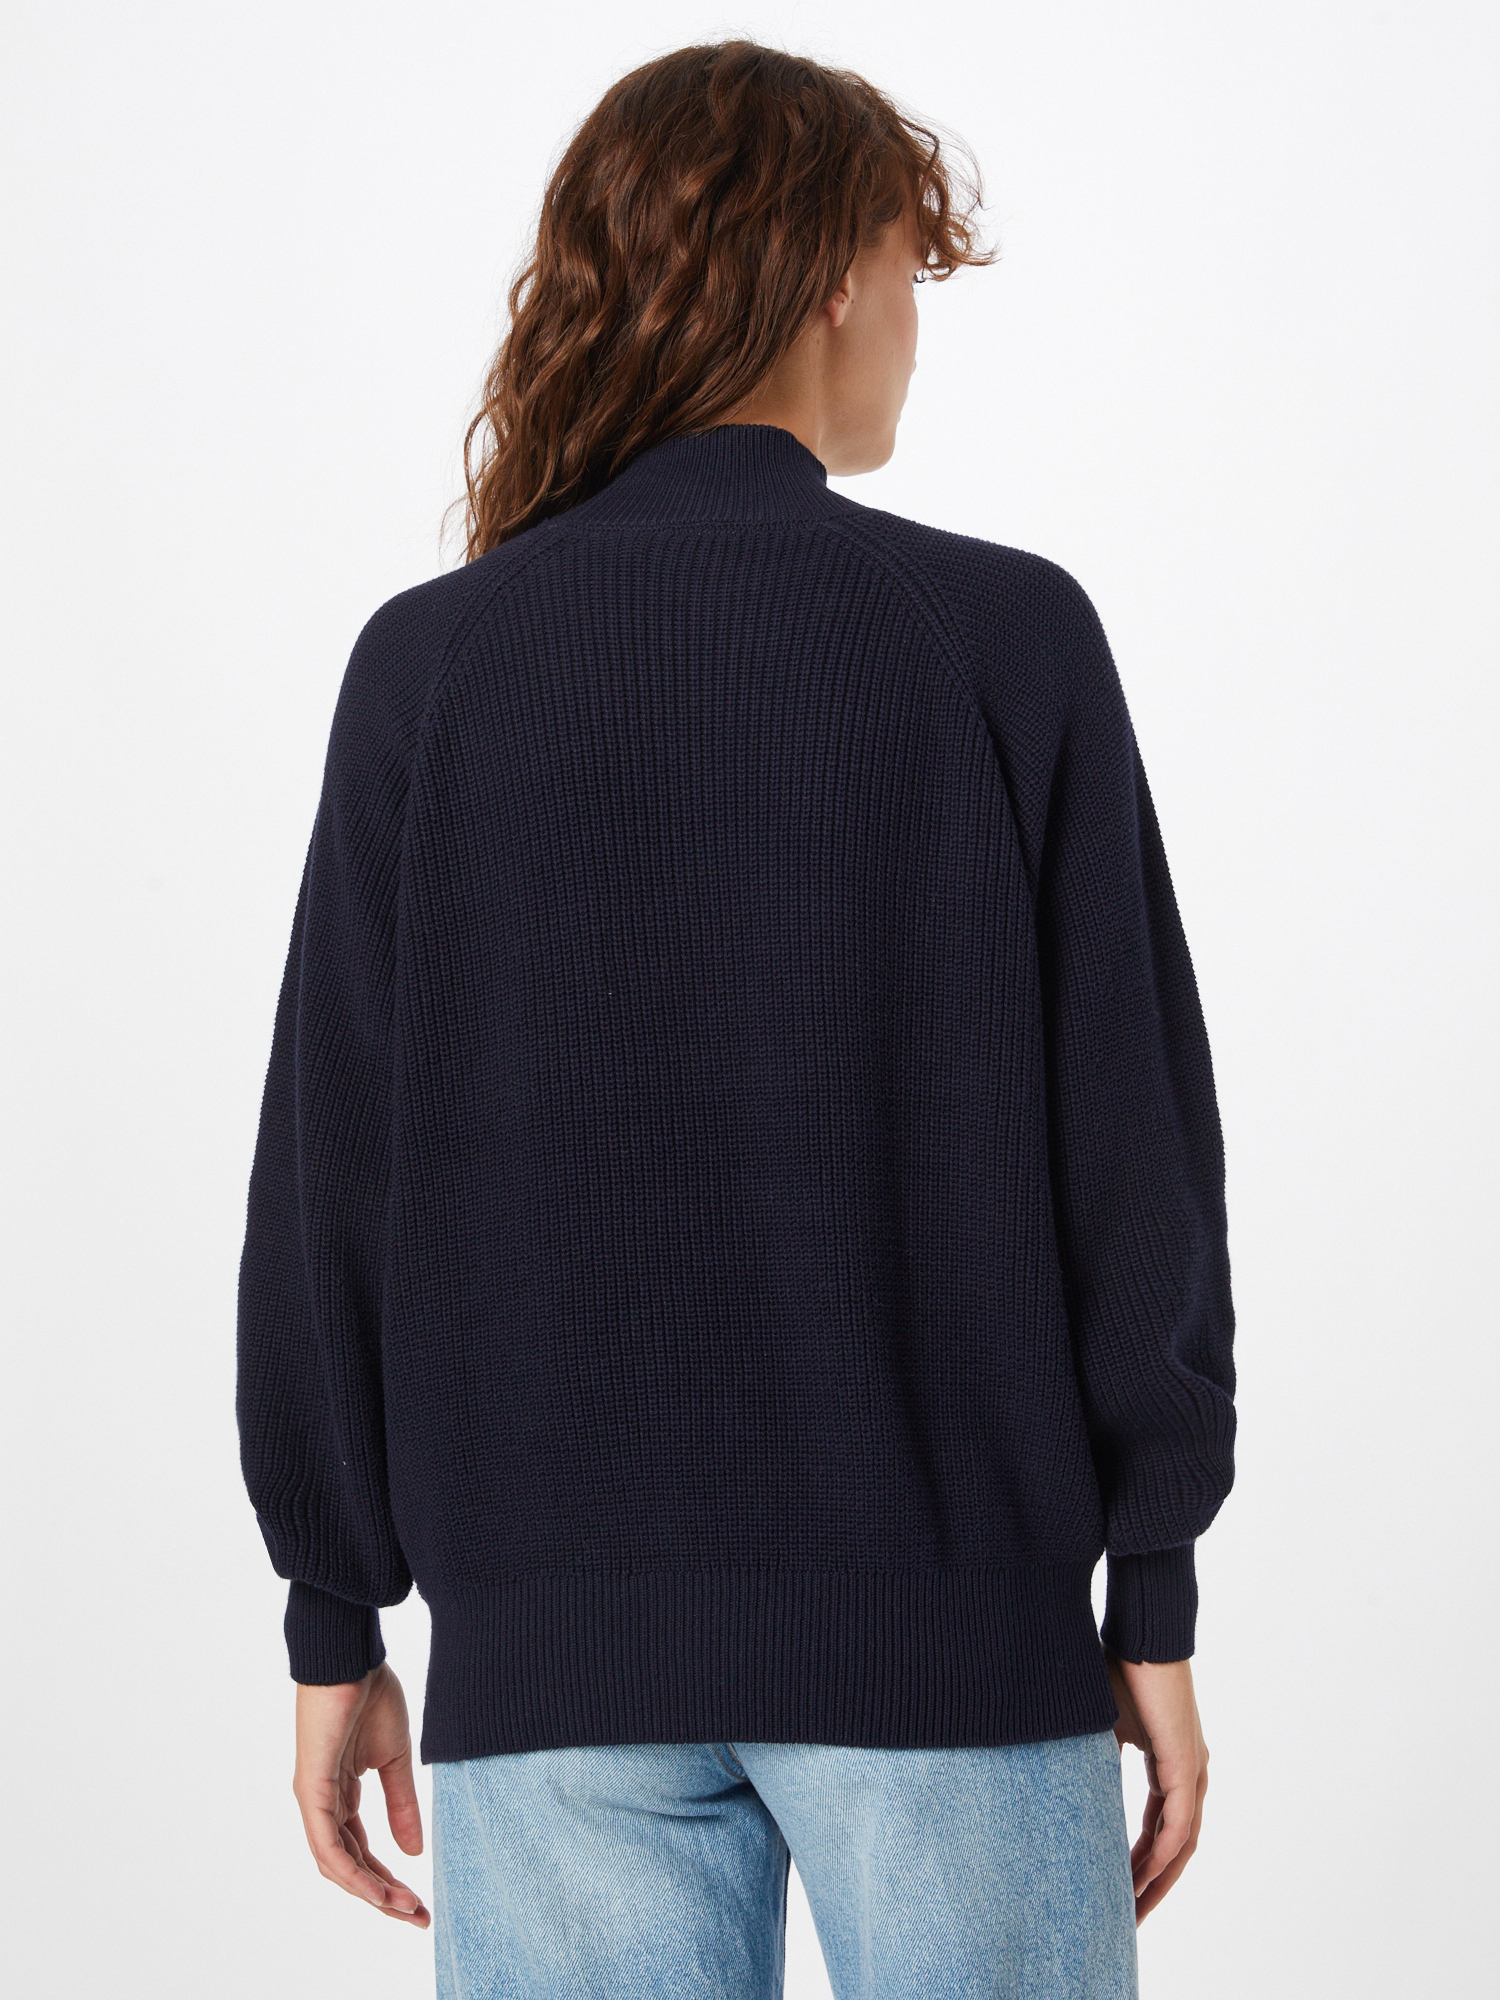 Odzież Kobiety Moves Sweter Mily w kolorze Granatowym 